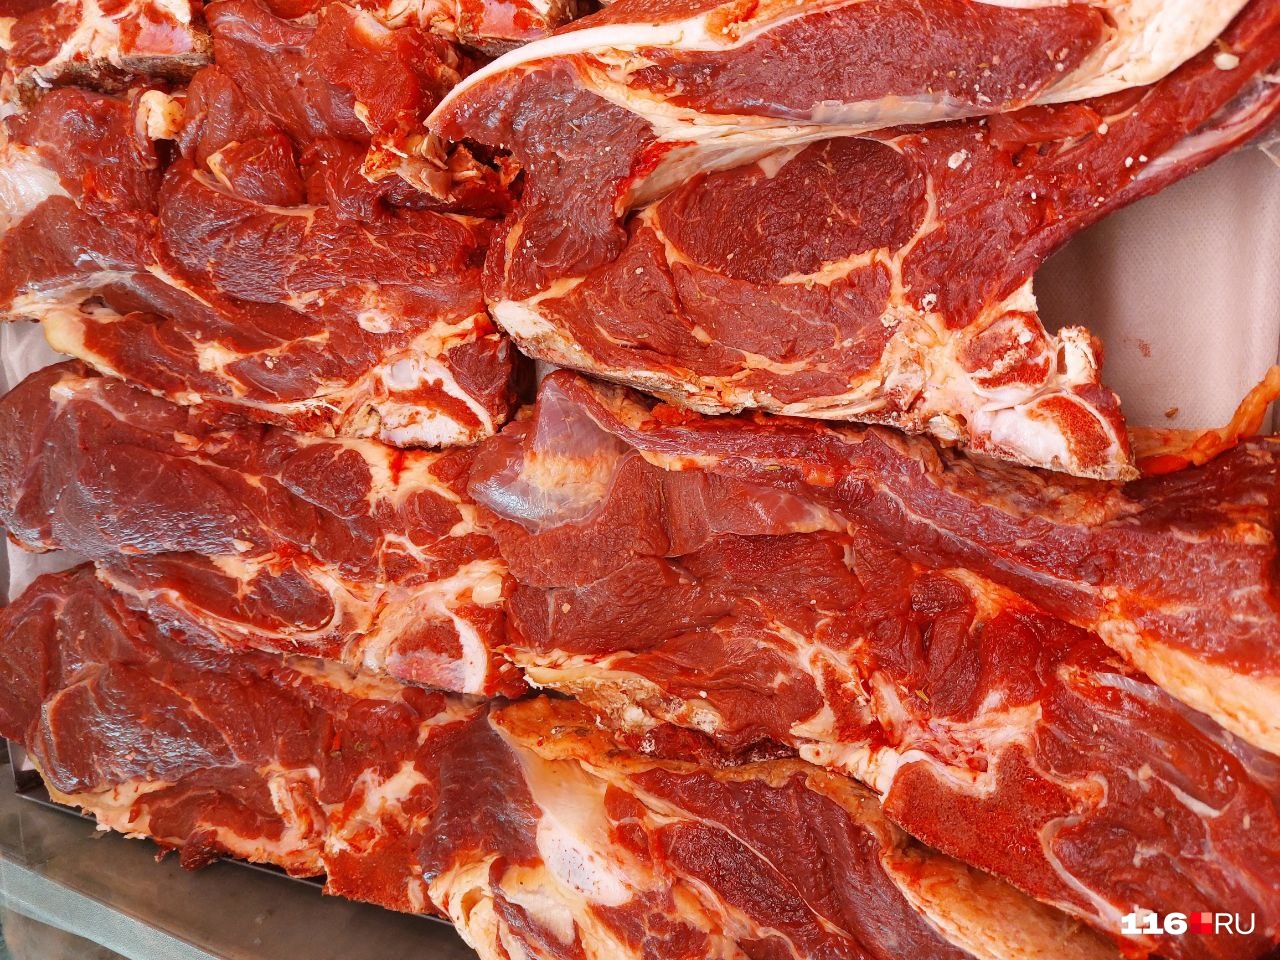 Мясо, которое продают на Московском рынке, выглядит свежим. Стоимость килограмма — 450 рублей